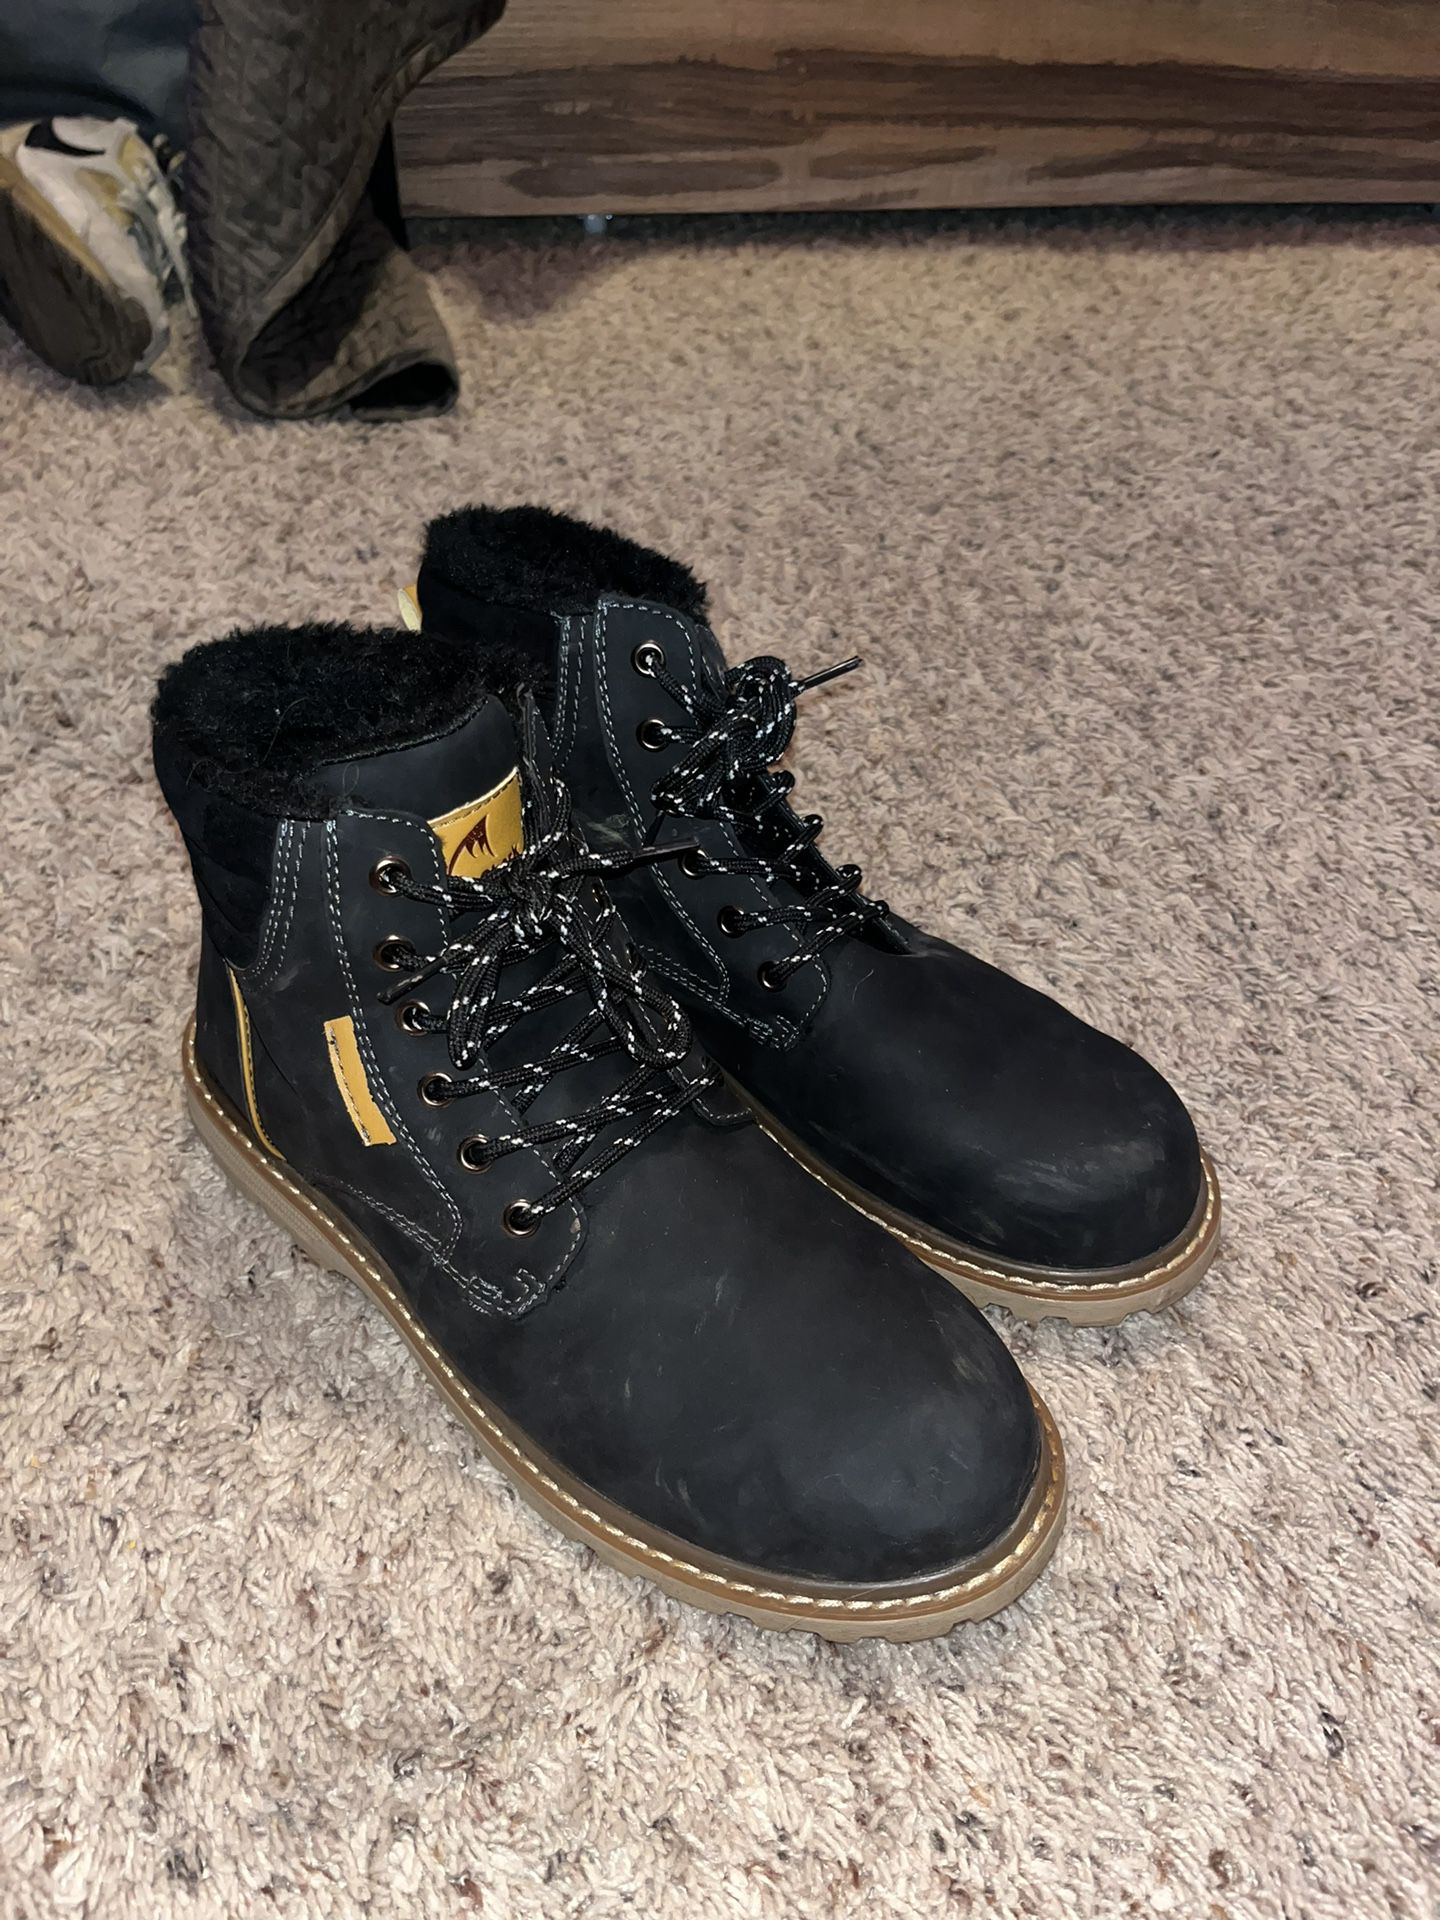 Quickshark Mountain Boots - Size 10.5